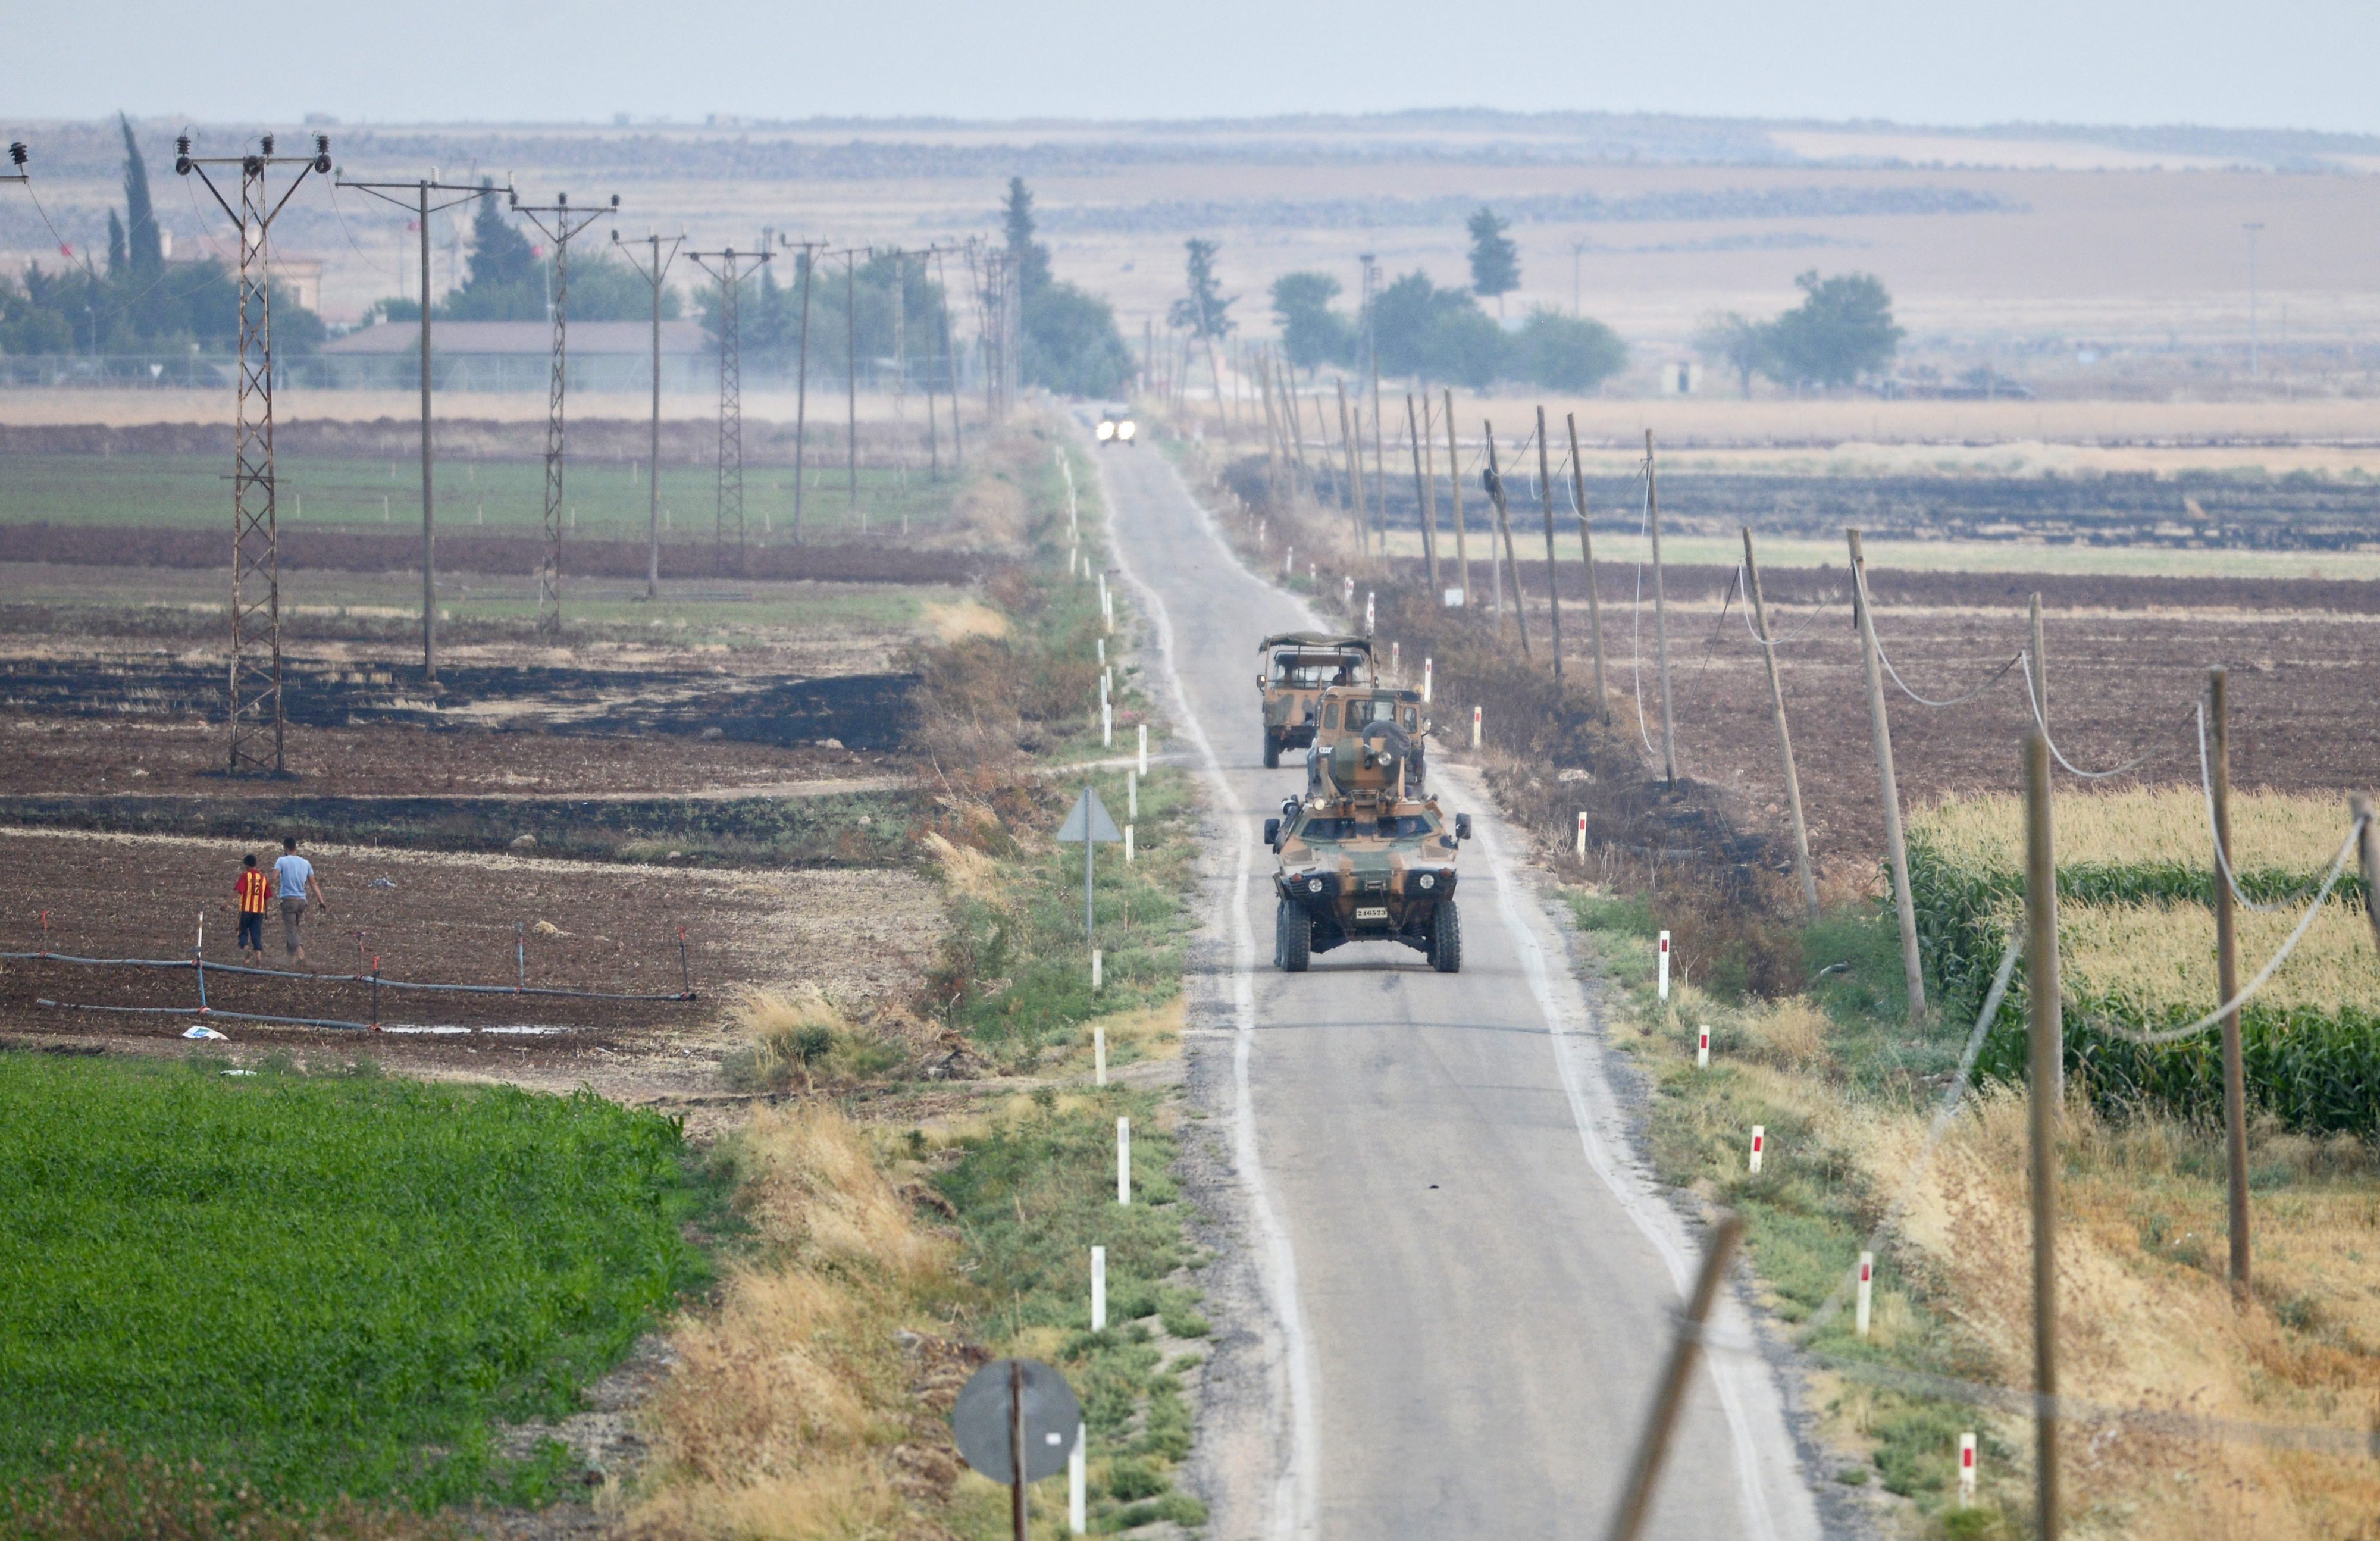 Η Άγκυρα στέλνει στρατιωτικά οχήματα, εξοπλισμό στα σύνορα με τη Συρία